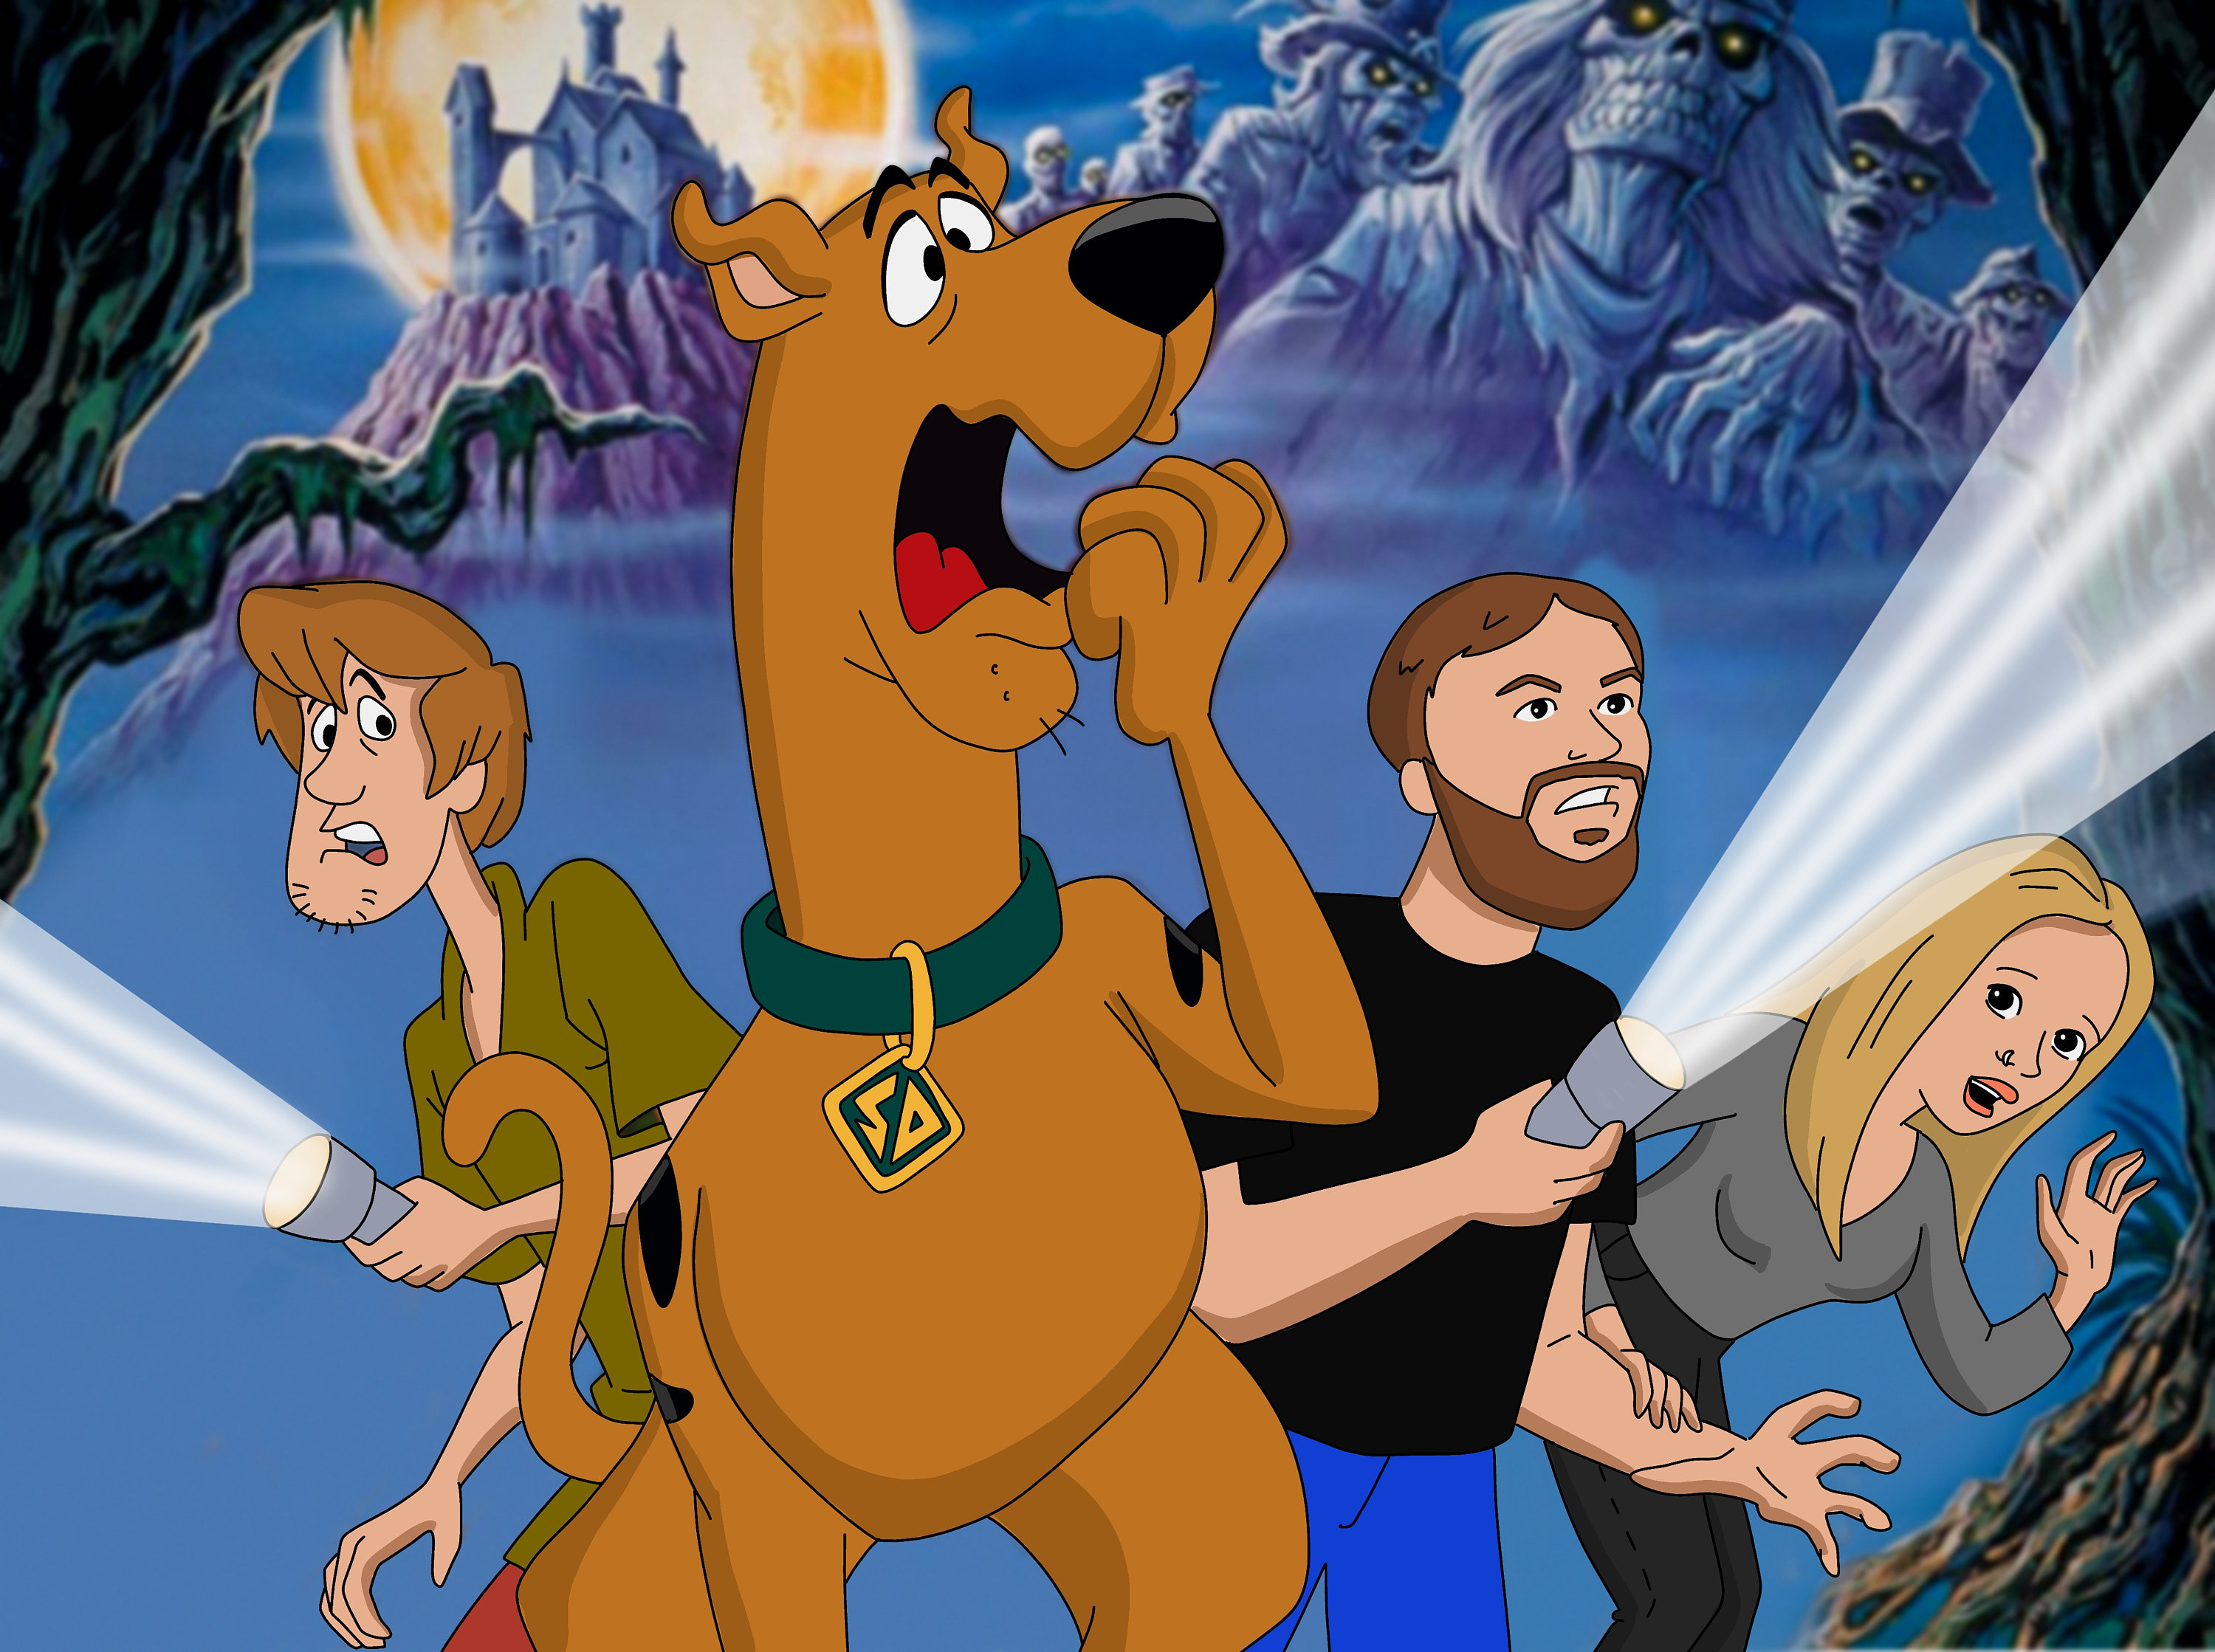 Scooby Doo Custom character Scooby Doo Portrait Cartoon | Etsy